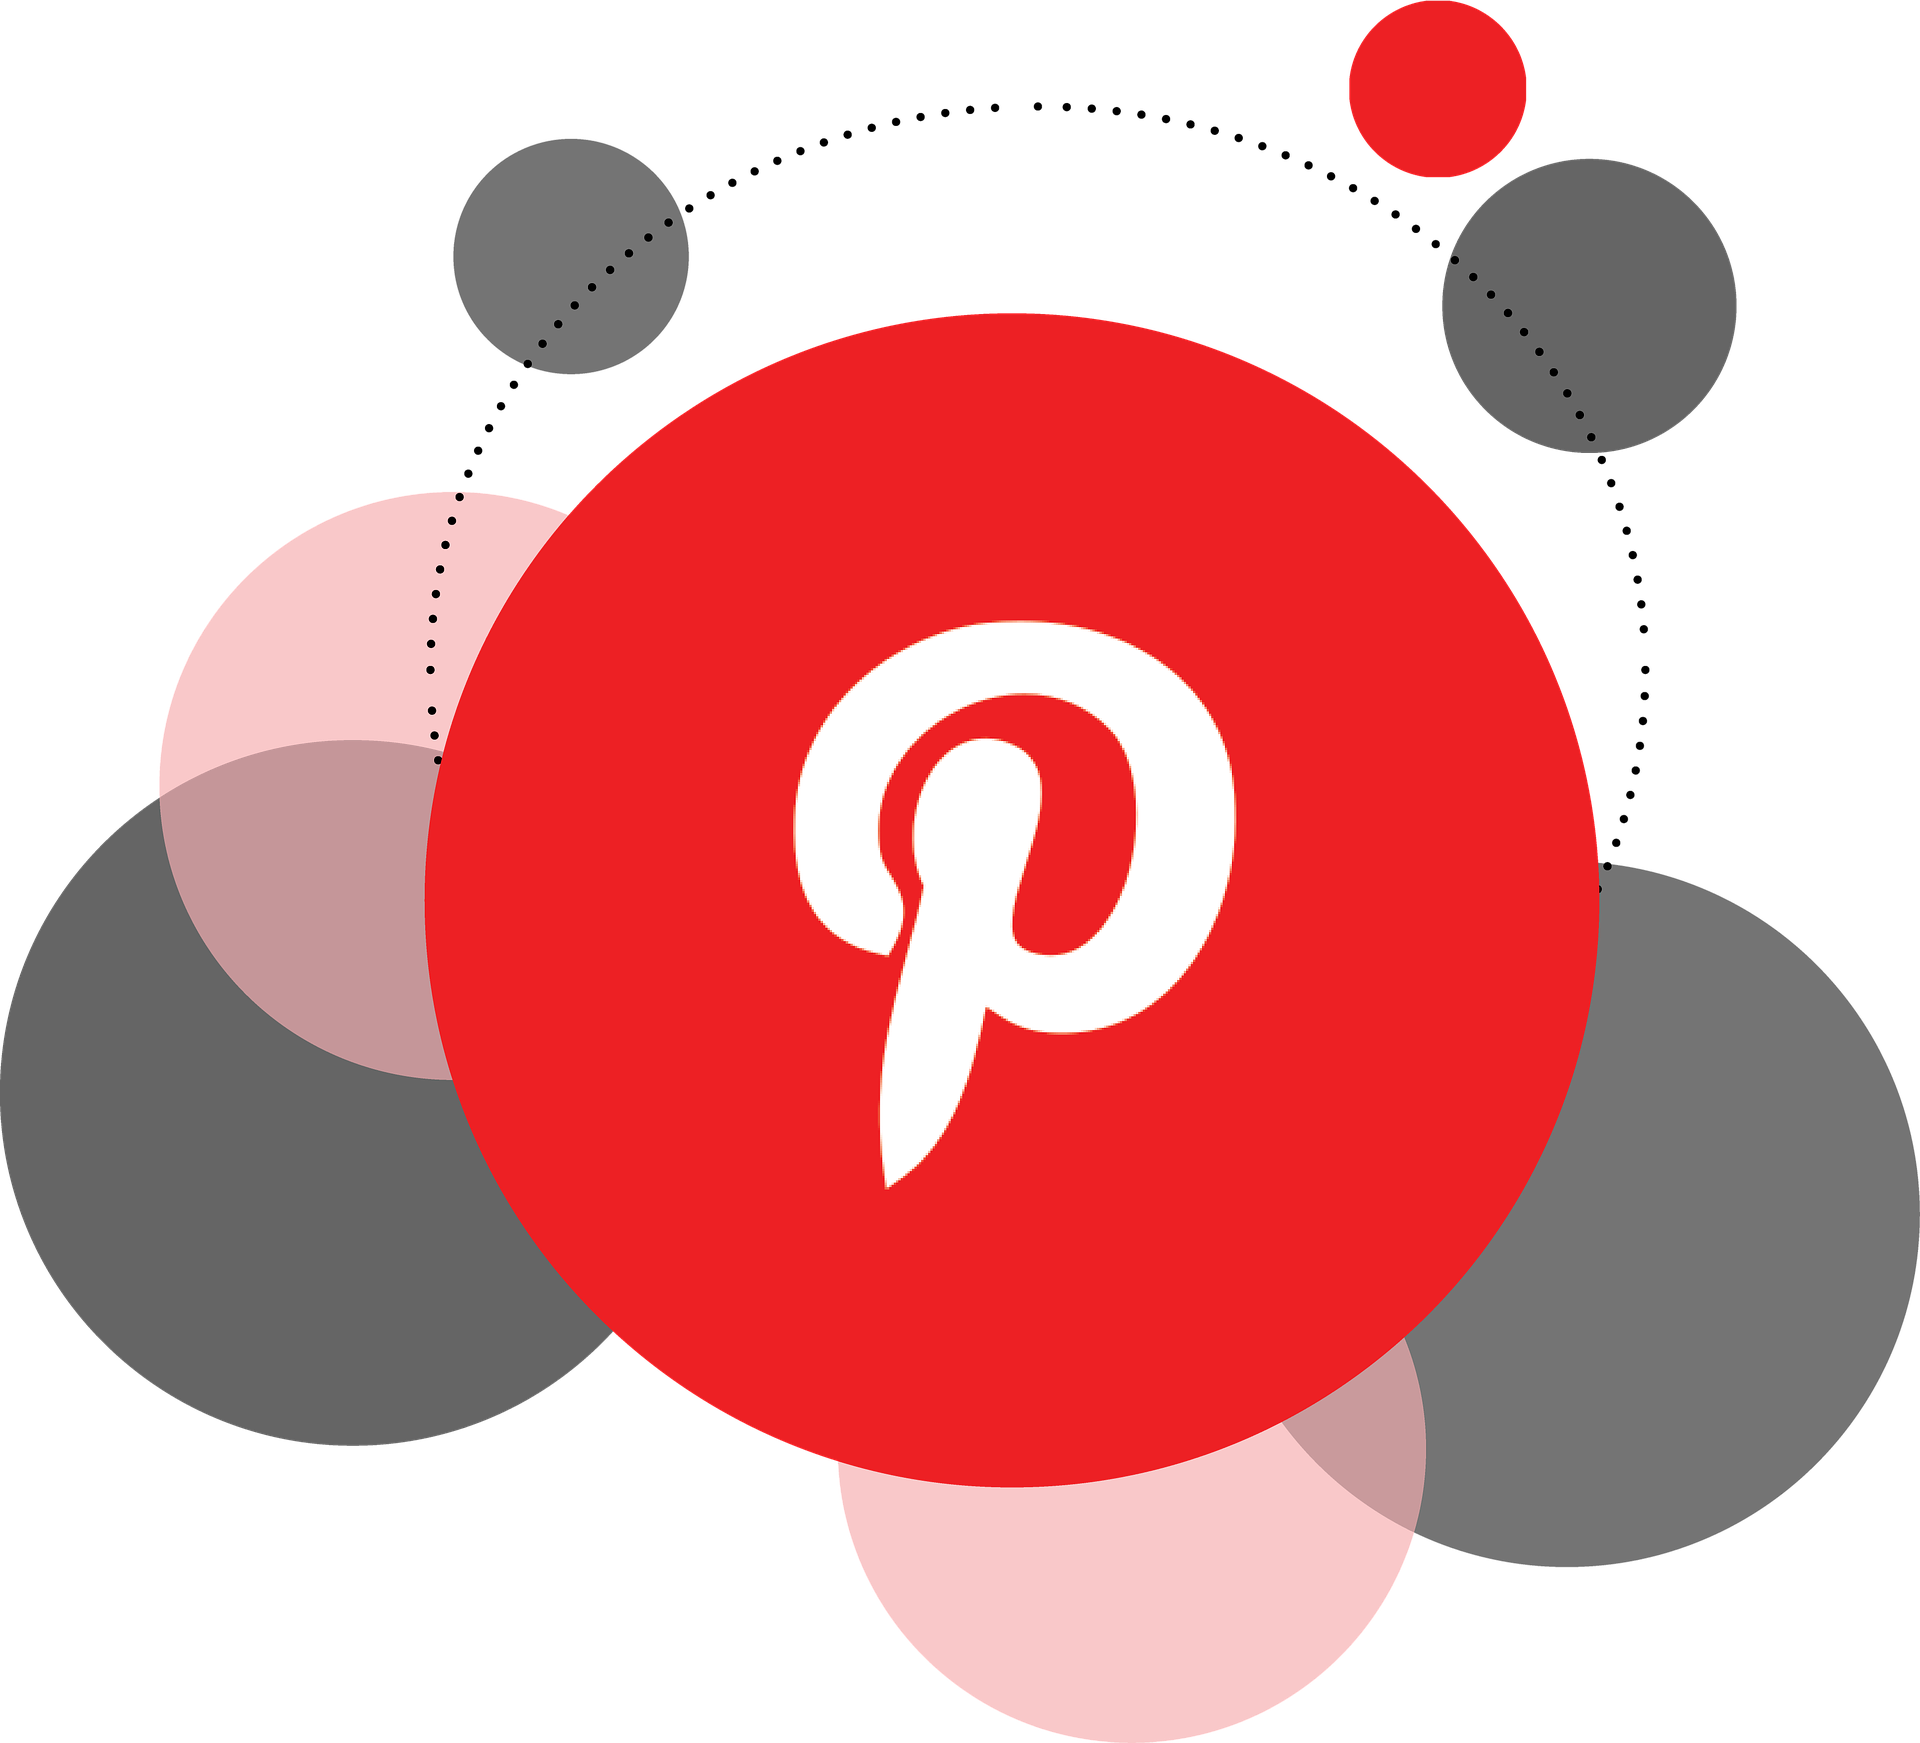 Para organizar mejor el contenido, Pinterest ahora permite crear secciones dentro de los tableros